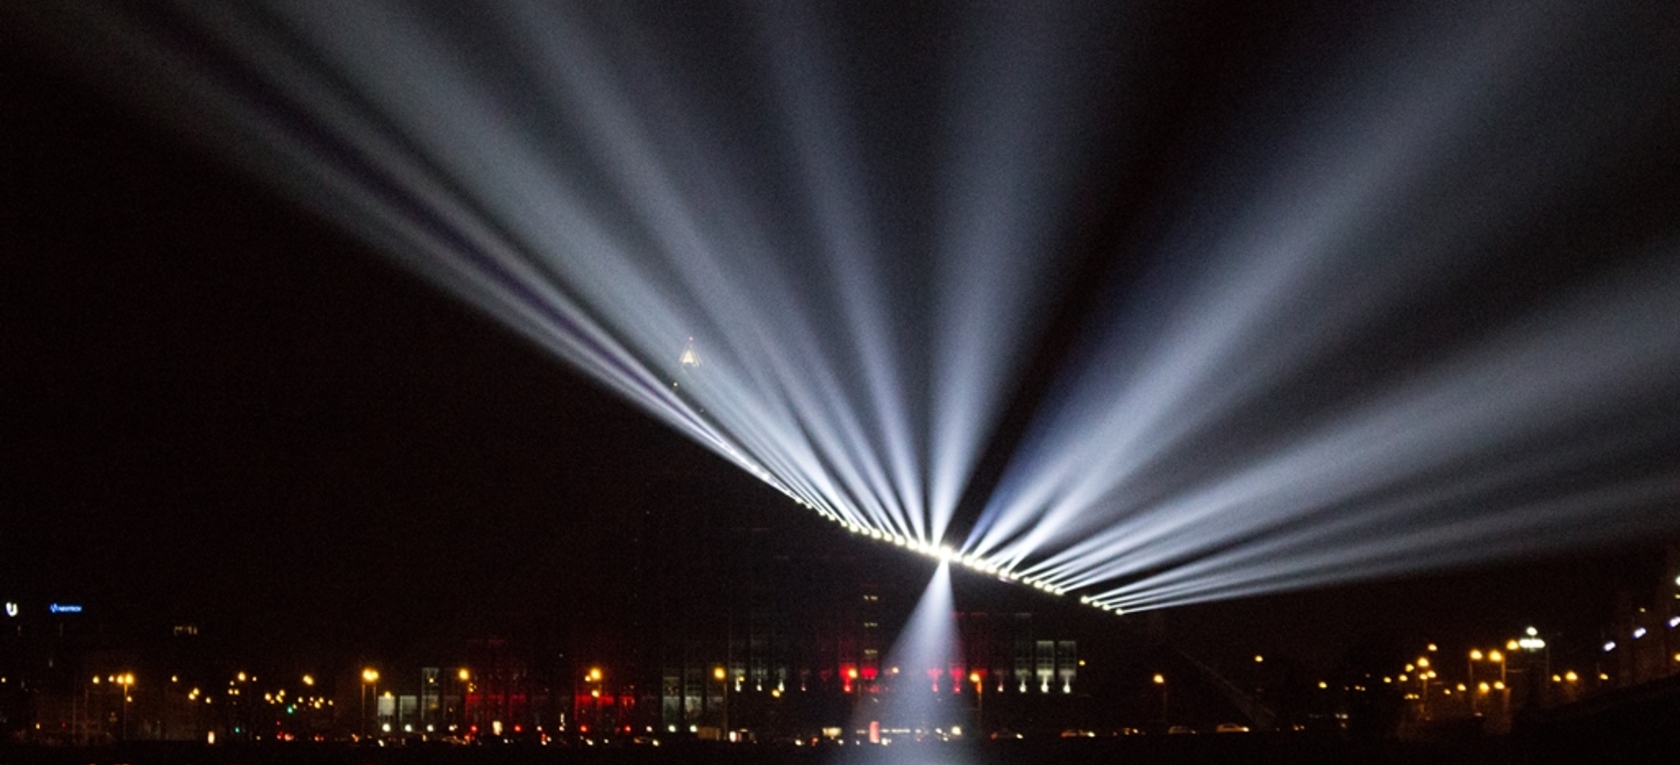 Festivāla "Staro Rīga" gaismas mākslinieki veido nākotnes scenārijus